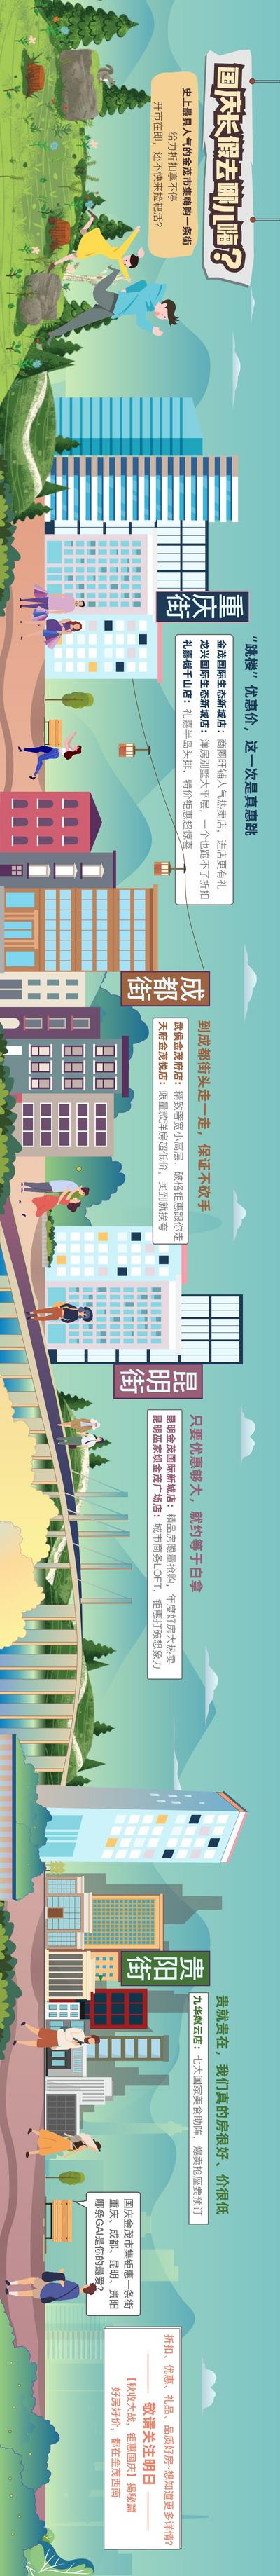 南门网 专题设计 长图 横版 房地产 公历节日 国庆节 卡通 扁平化